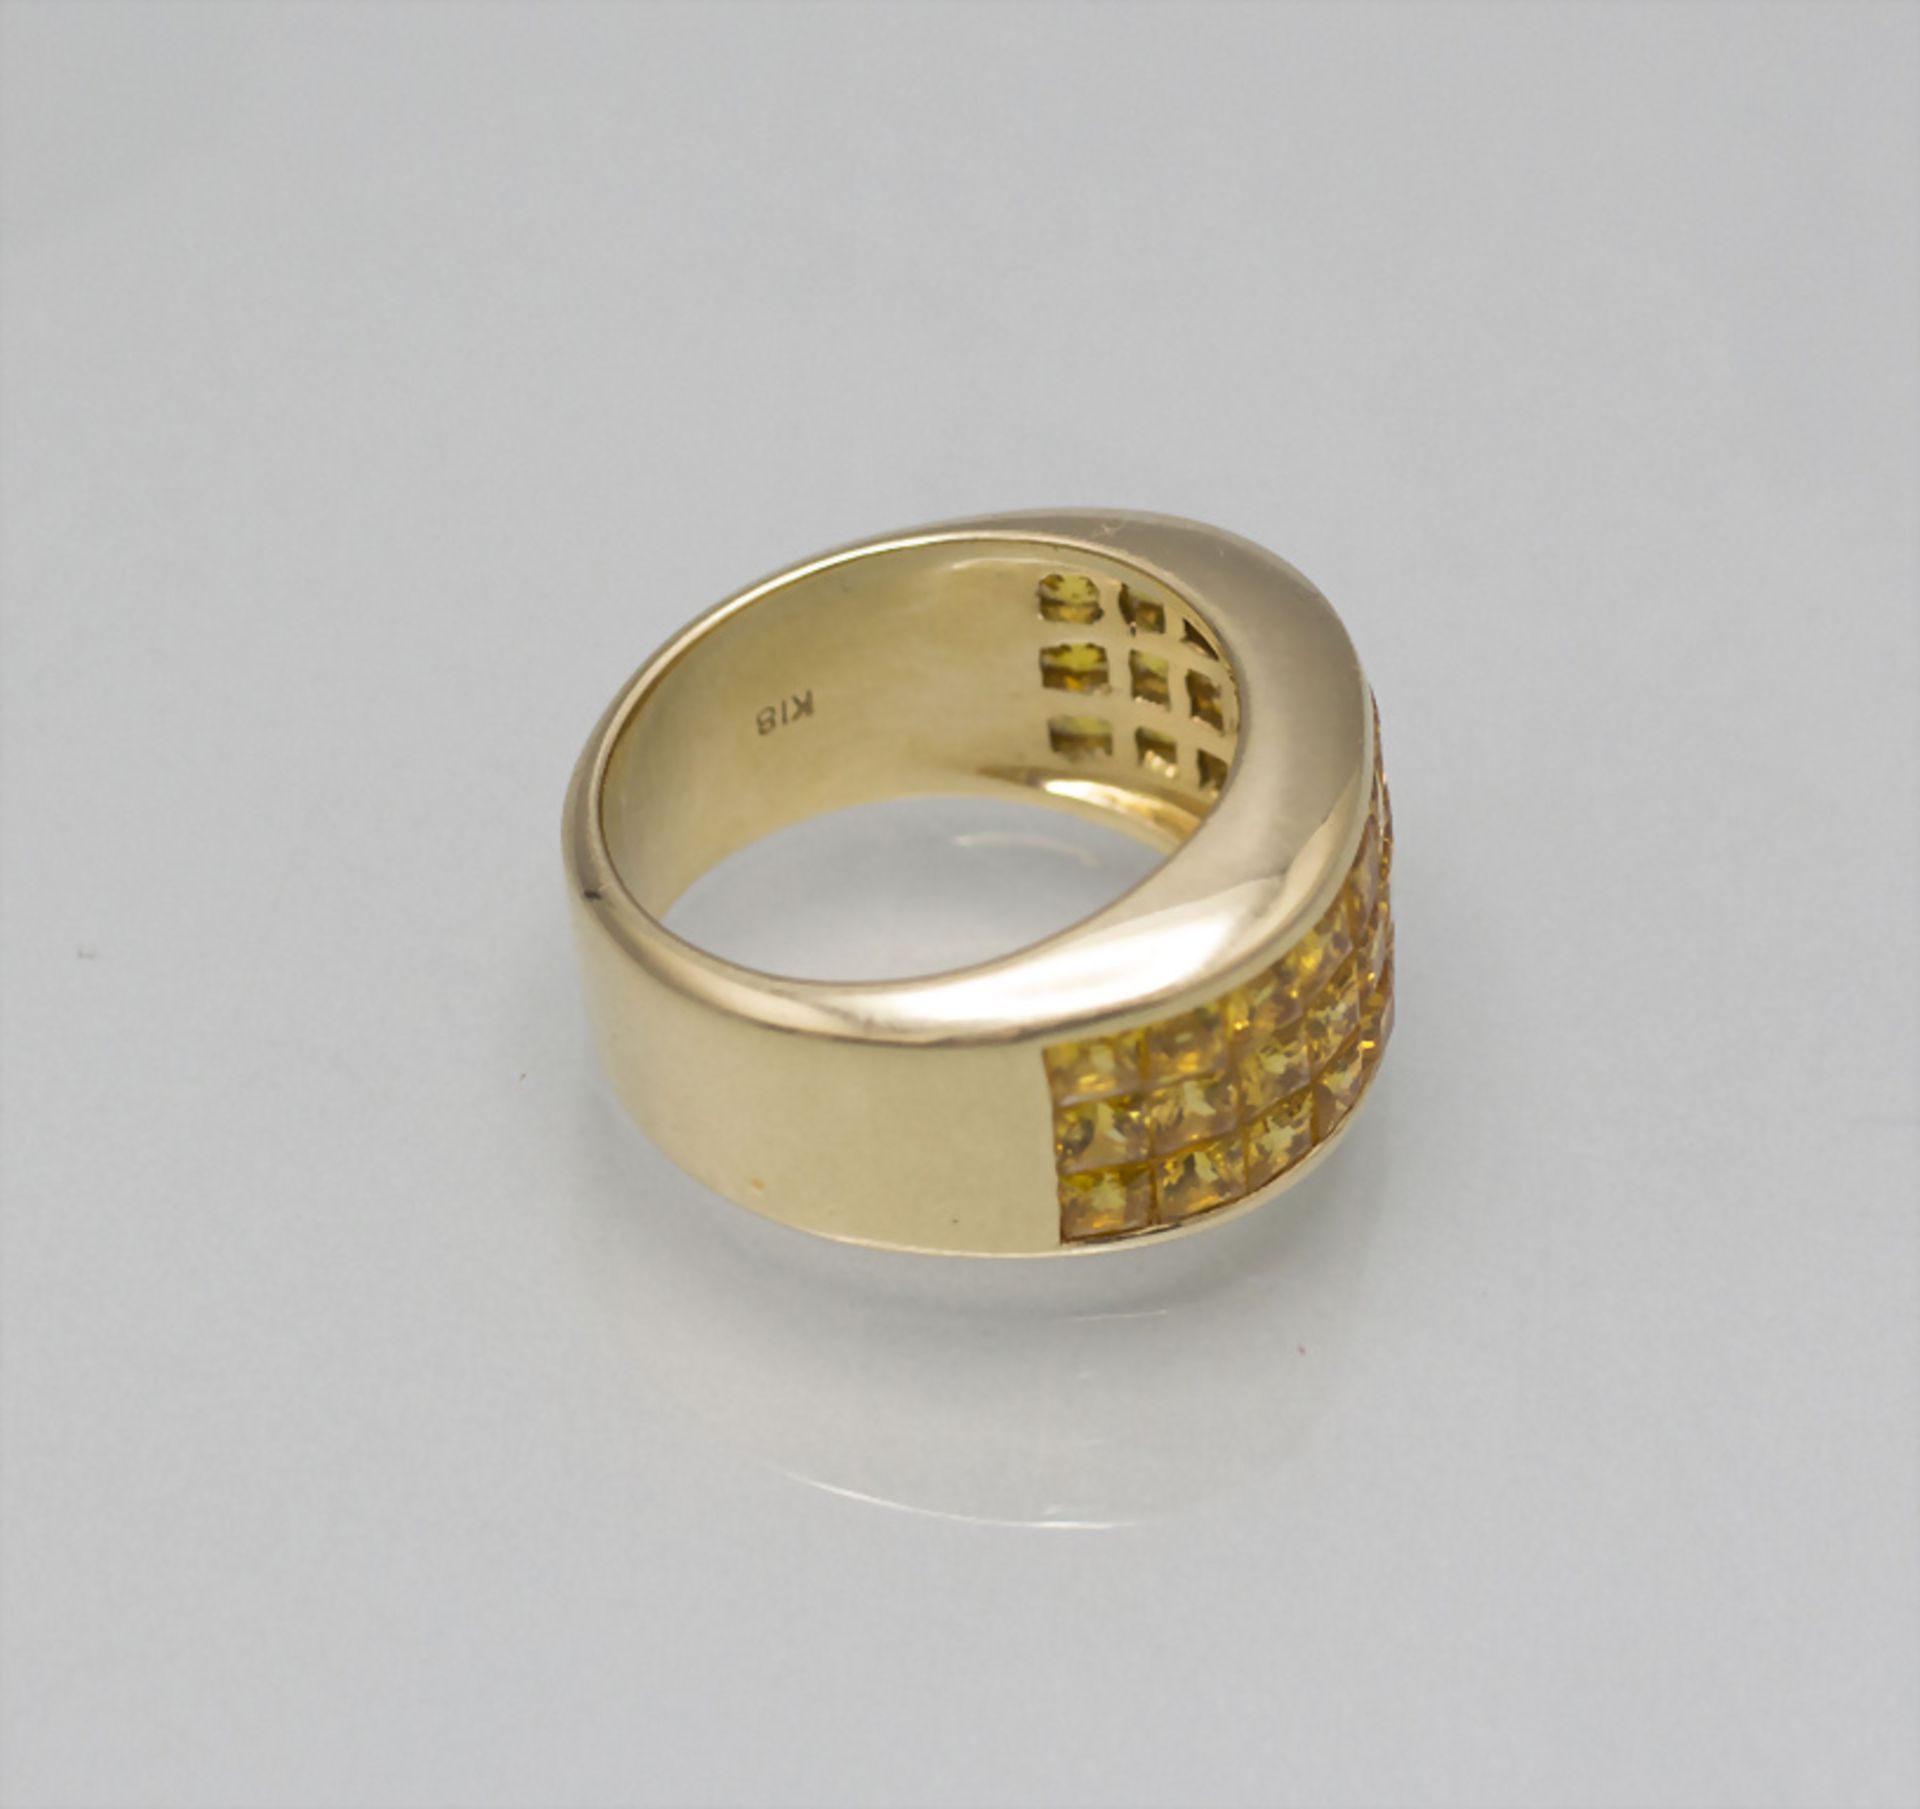 Damenring mit gelben Saphiren / A ladies 18 ct gold ring with yellow sapphires - Bild 2 aus 2